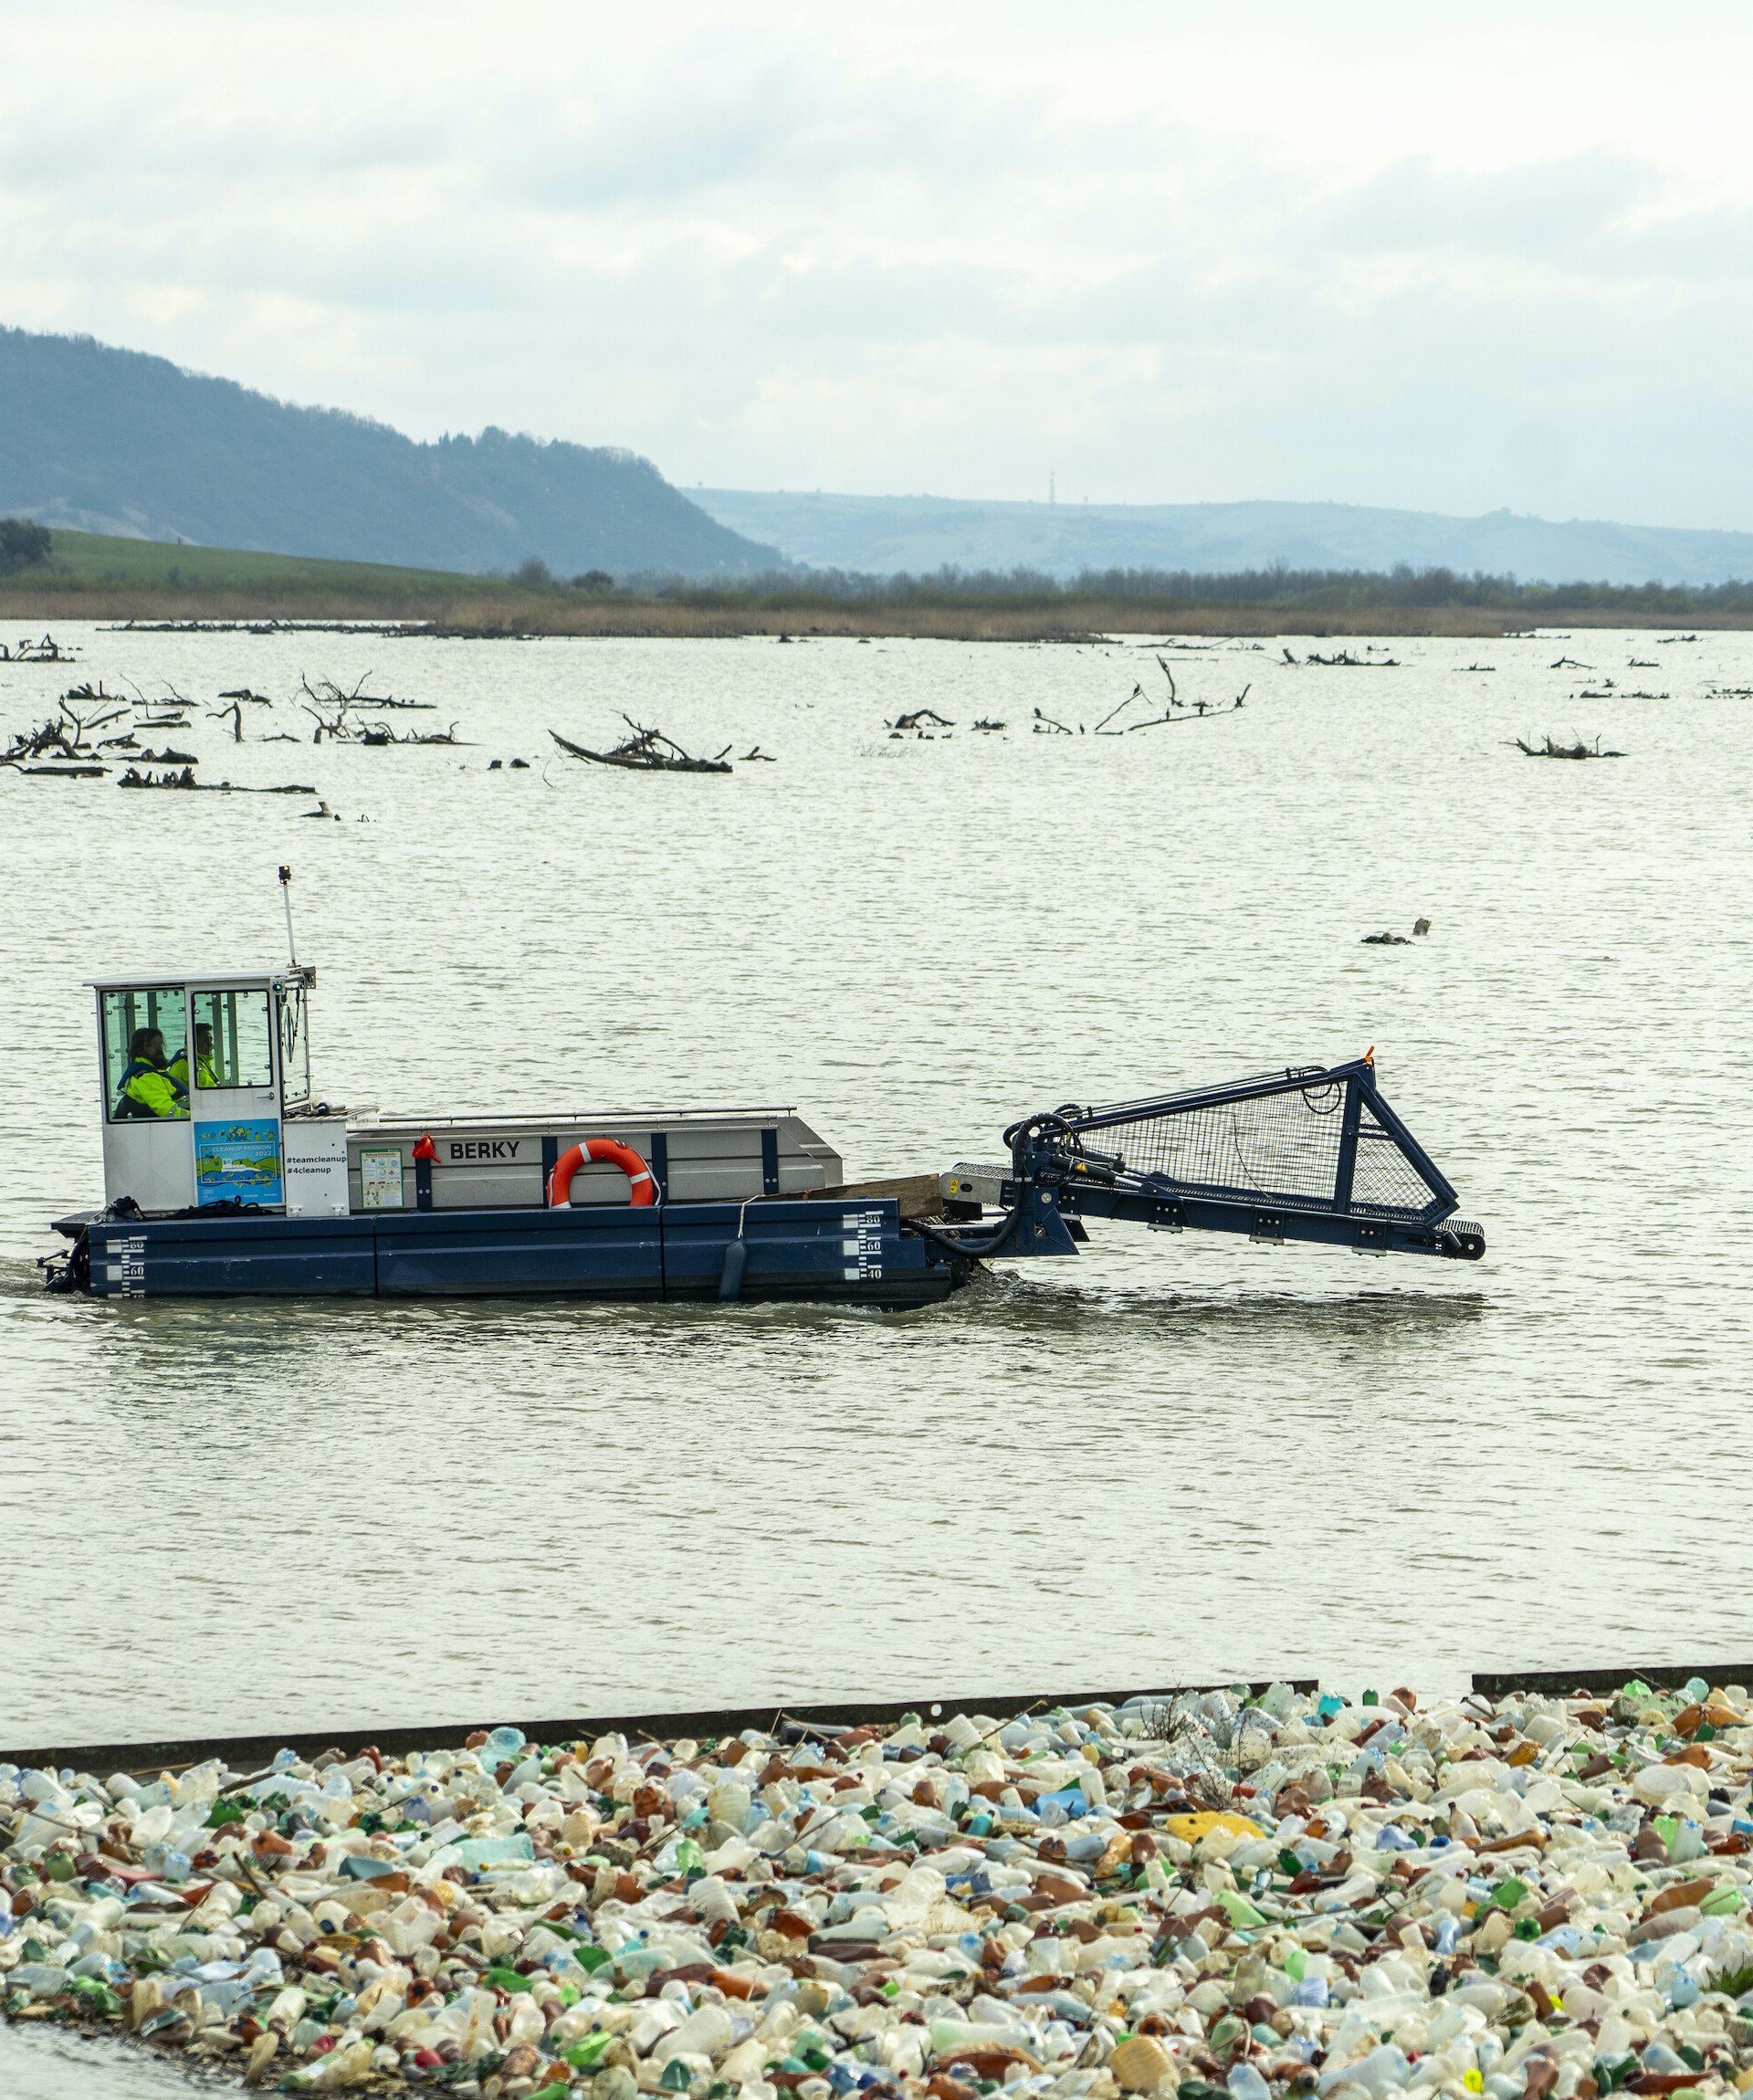 Plovilo za pobiranje odpadkov na Donavi Collectix